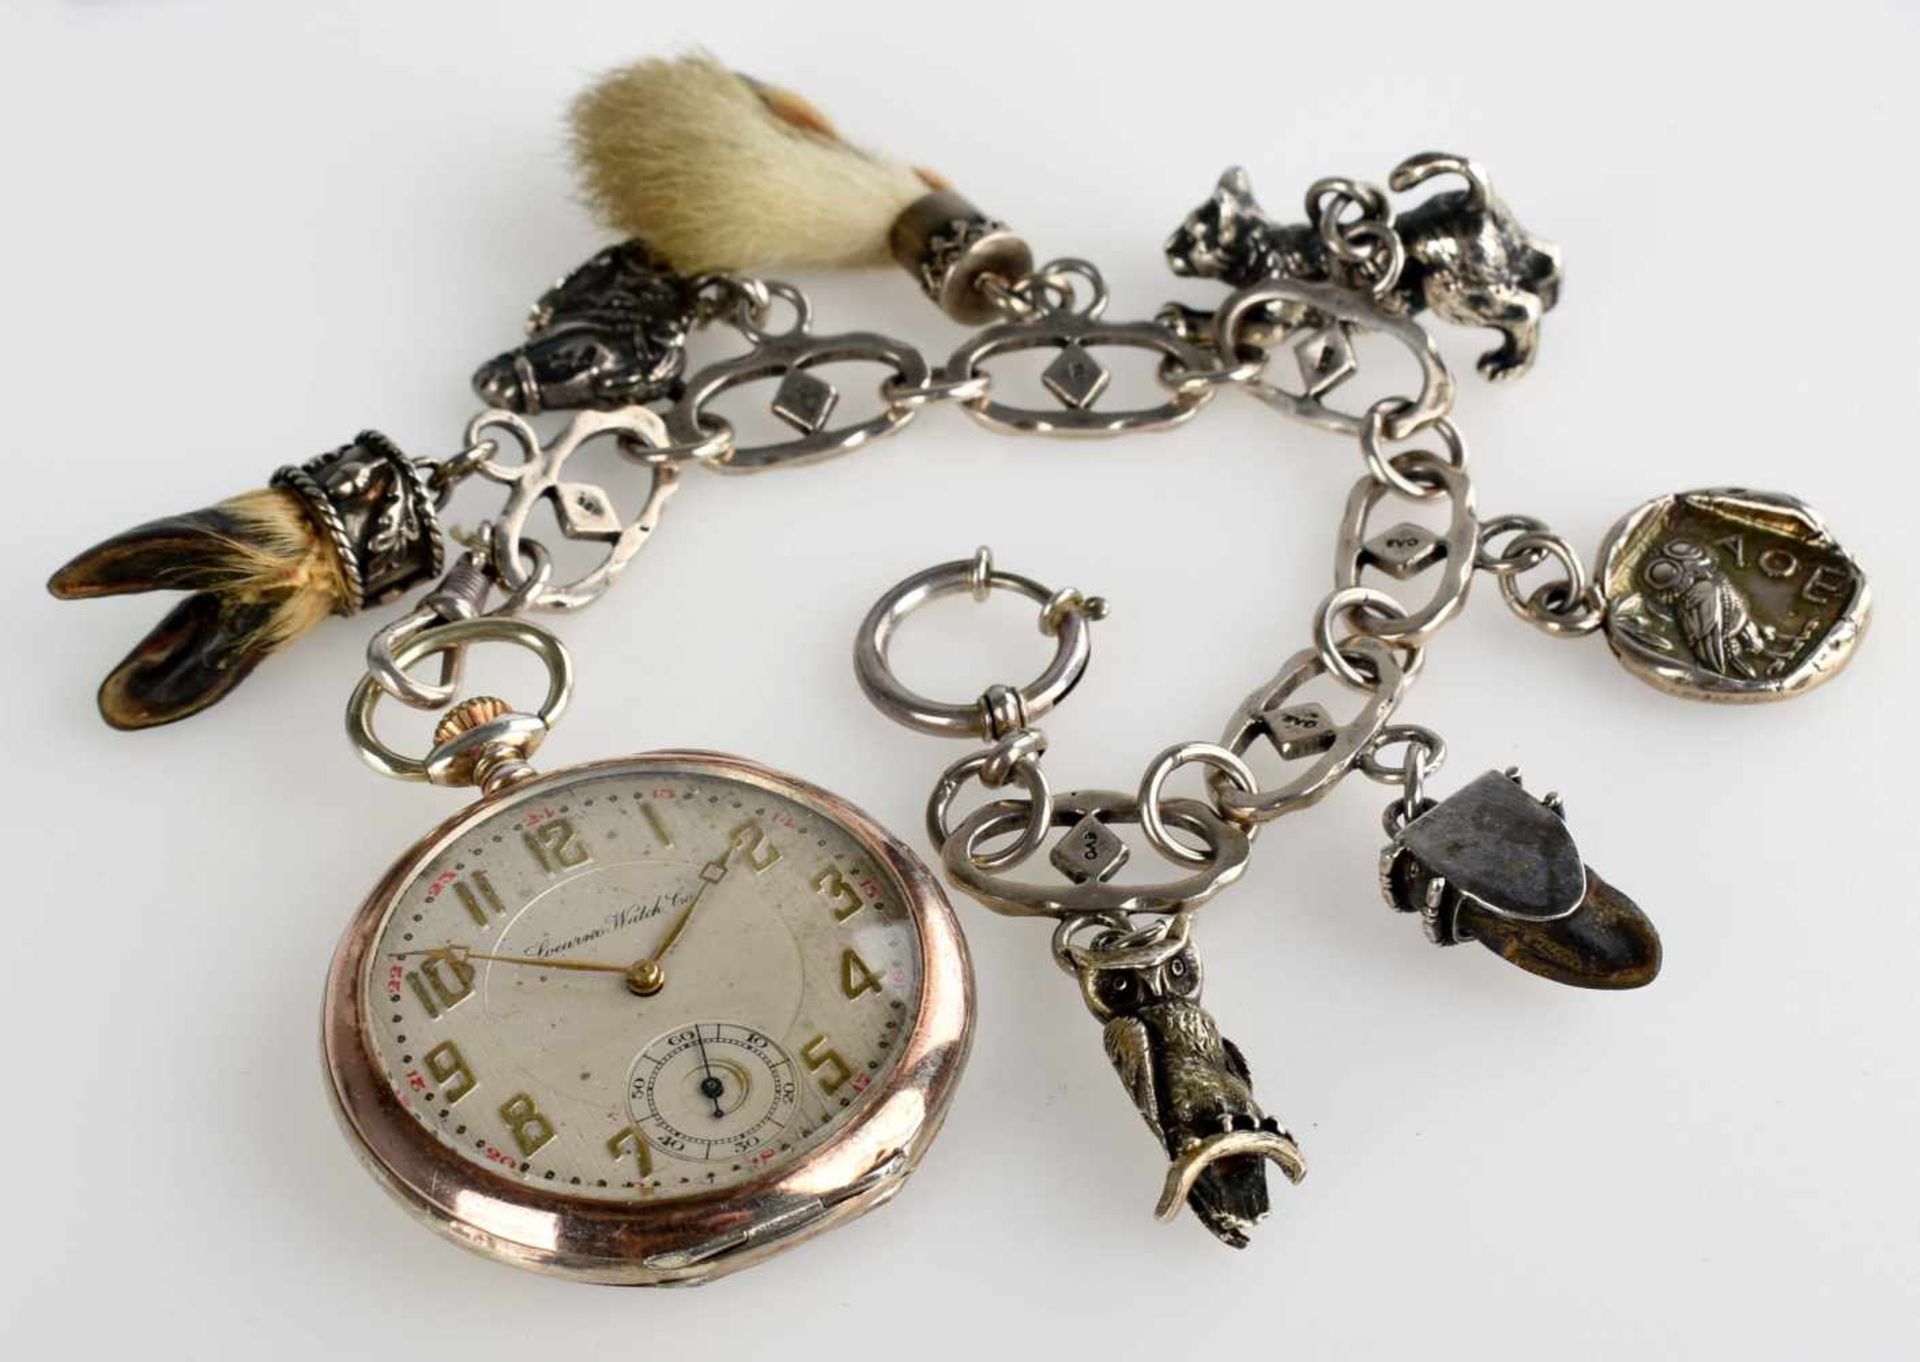 Taschenuhr mit Uhrenkette Silber 800, helles Zifferblatt bez. "Locarno Watch Co.", Stunde, Minute - Bild 2 aus 4